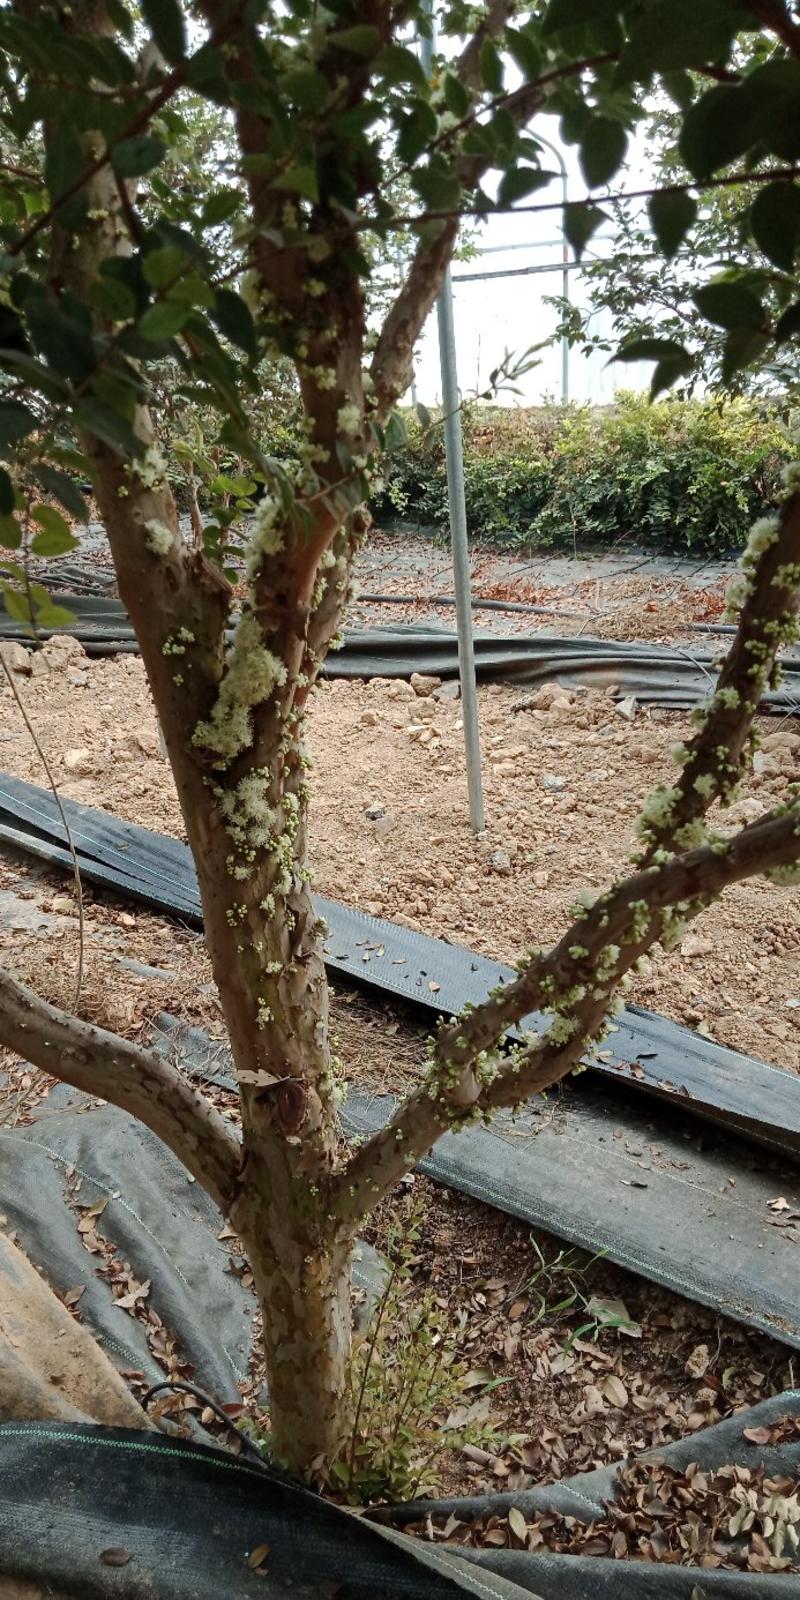 嘉宝果苗树葡萄苗品种保证纯度免费提供种植技术